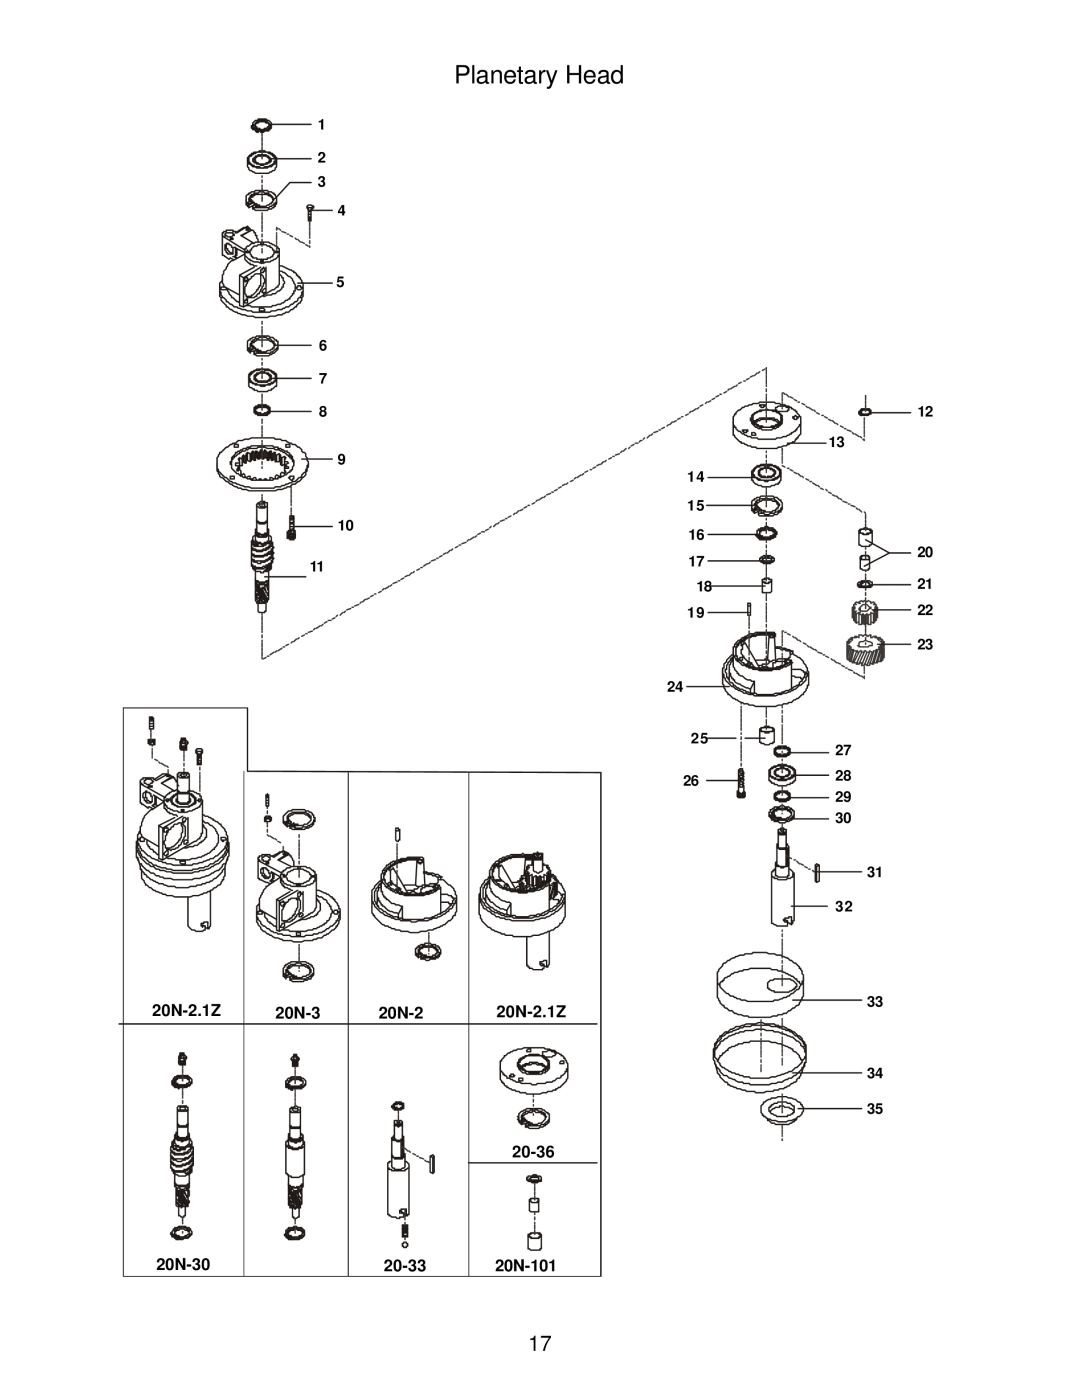 Varimixer W20 J, W20 A, W20 F operation manual Planetary Head, 20N-2.1Z, 20-36, 20N-30, 20-33, 20N-101 